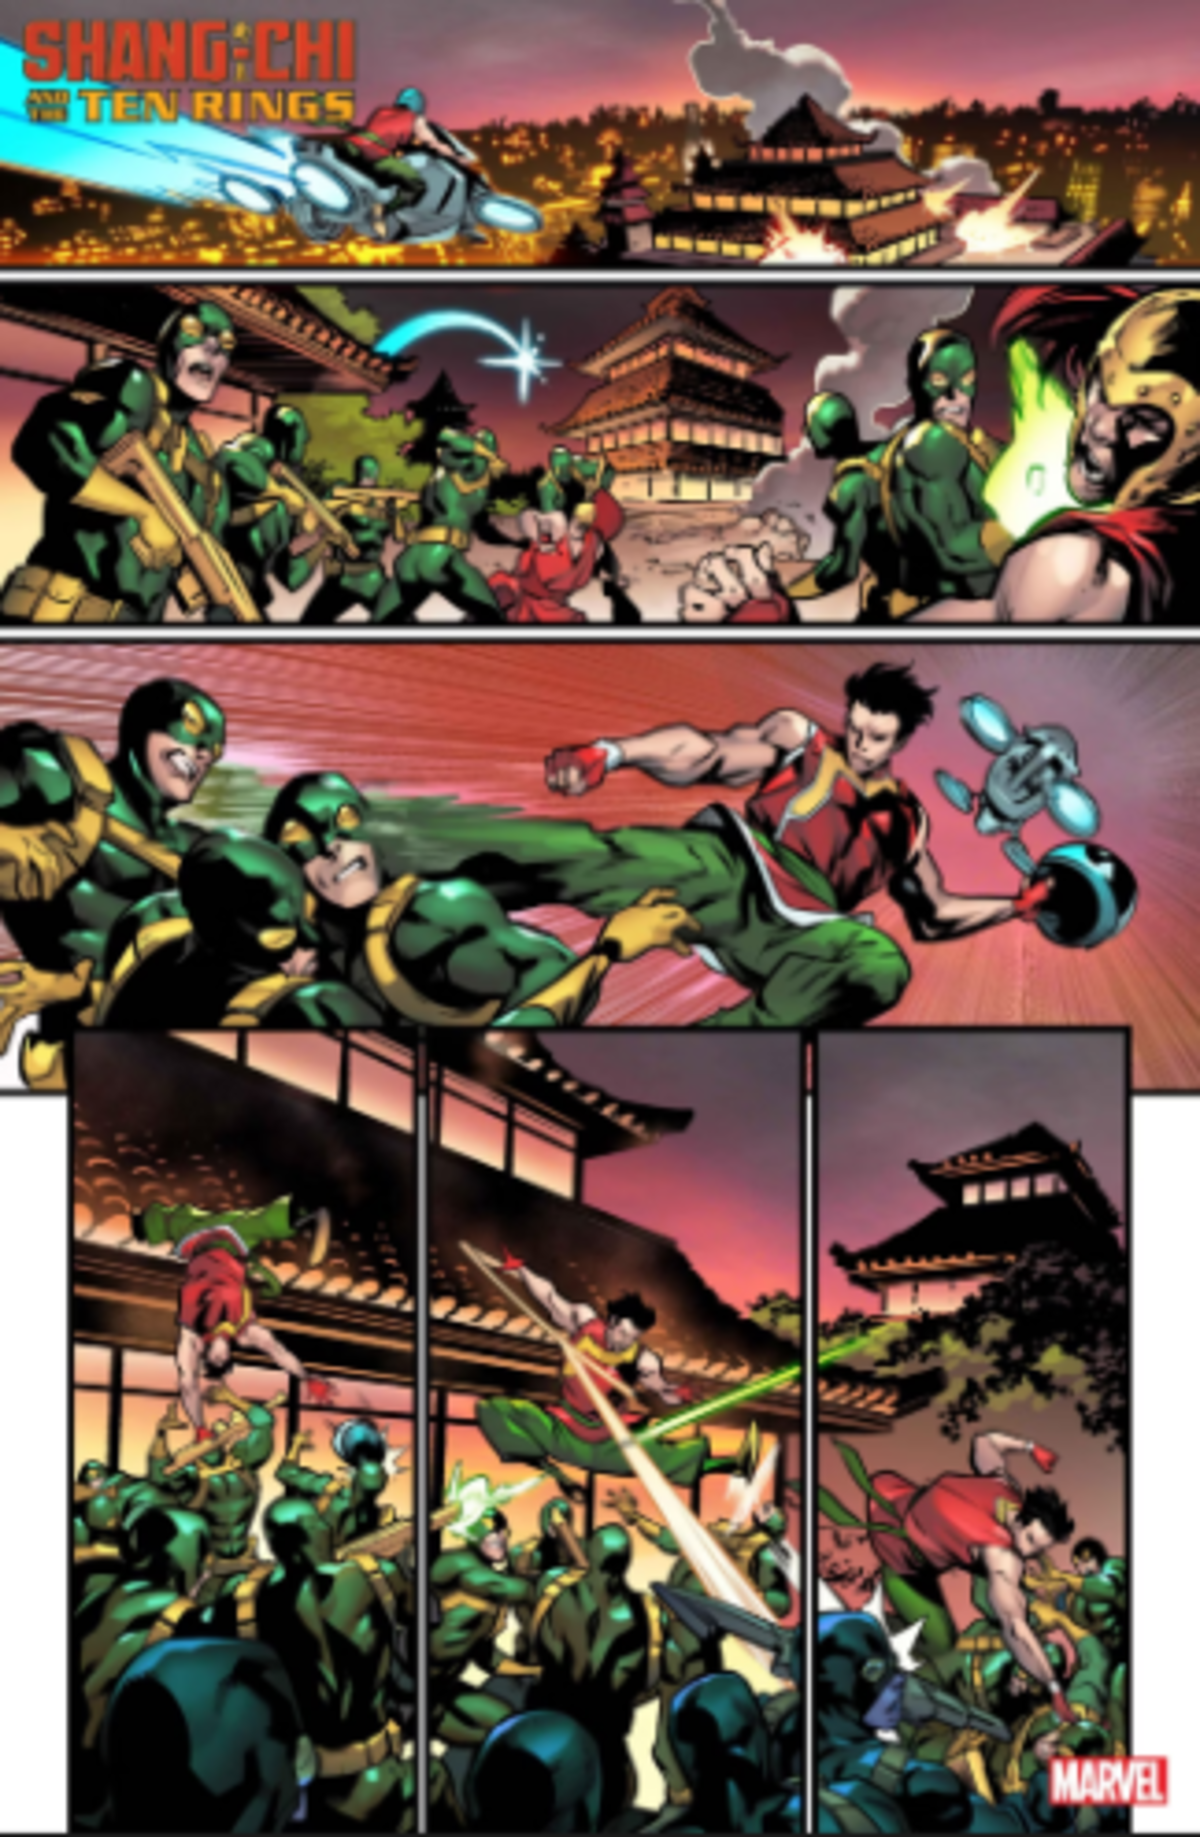 Marvel le da un nuevo e impresionante villano a Shang-Chi